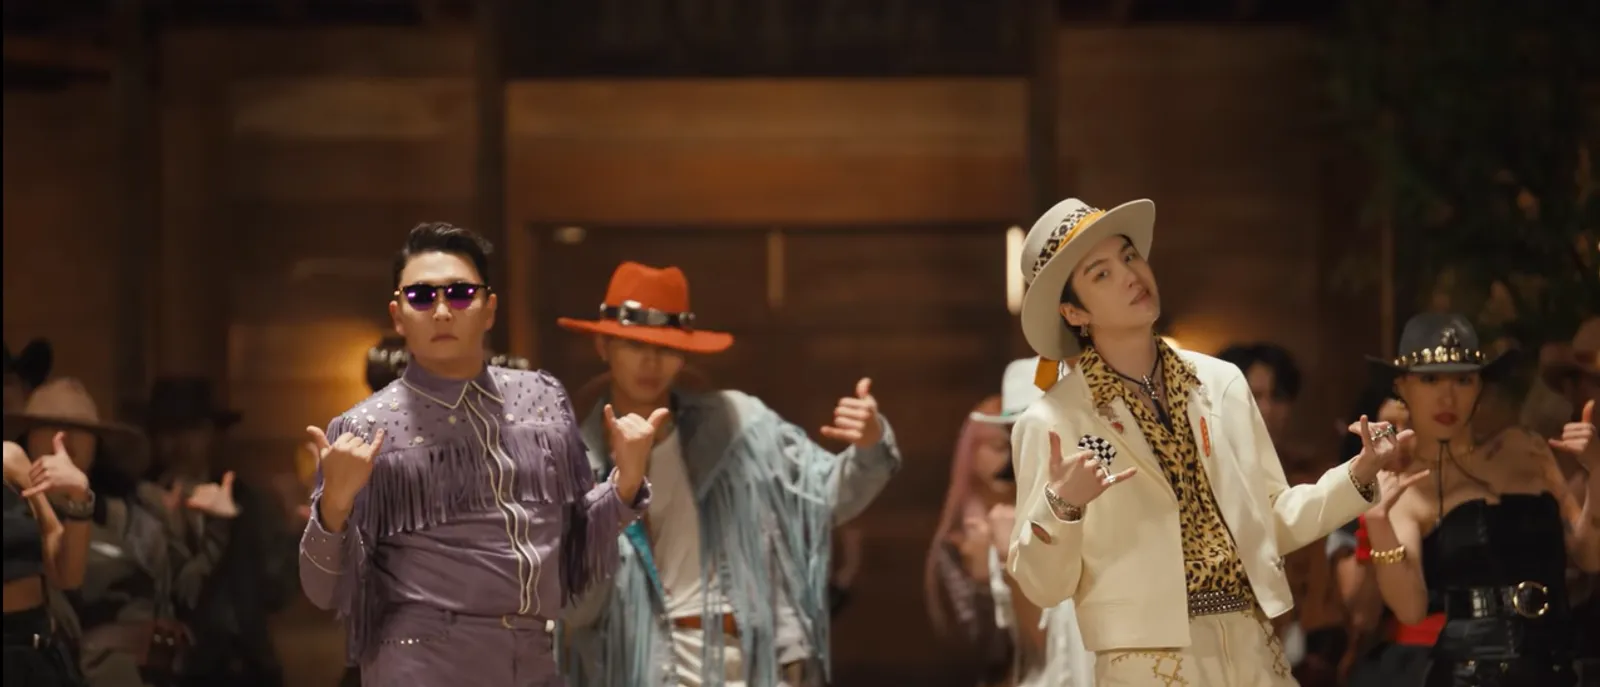 Sudah Rilis, Psy & Suga BTS Jadi Koboi Eksentrik Dalam MV "That That"